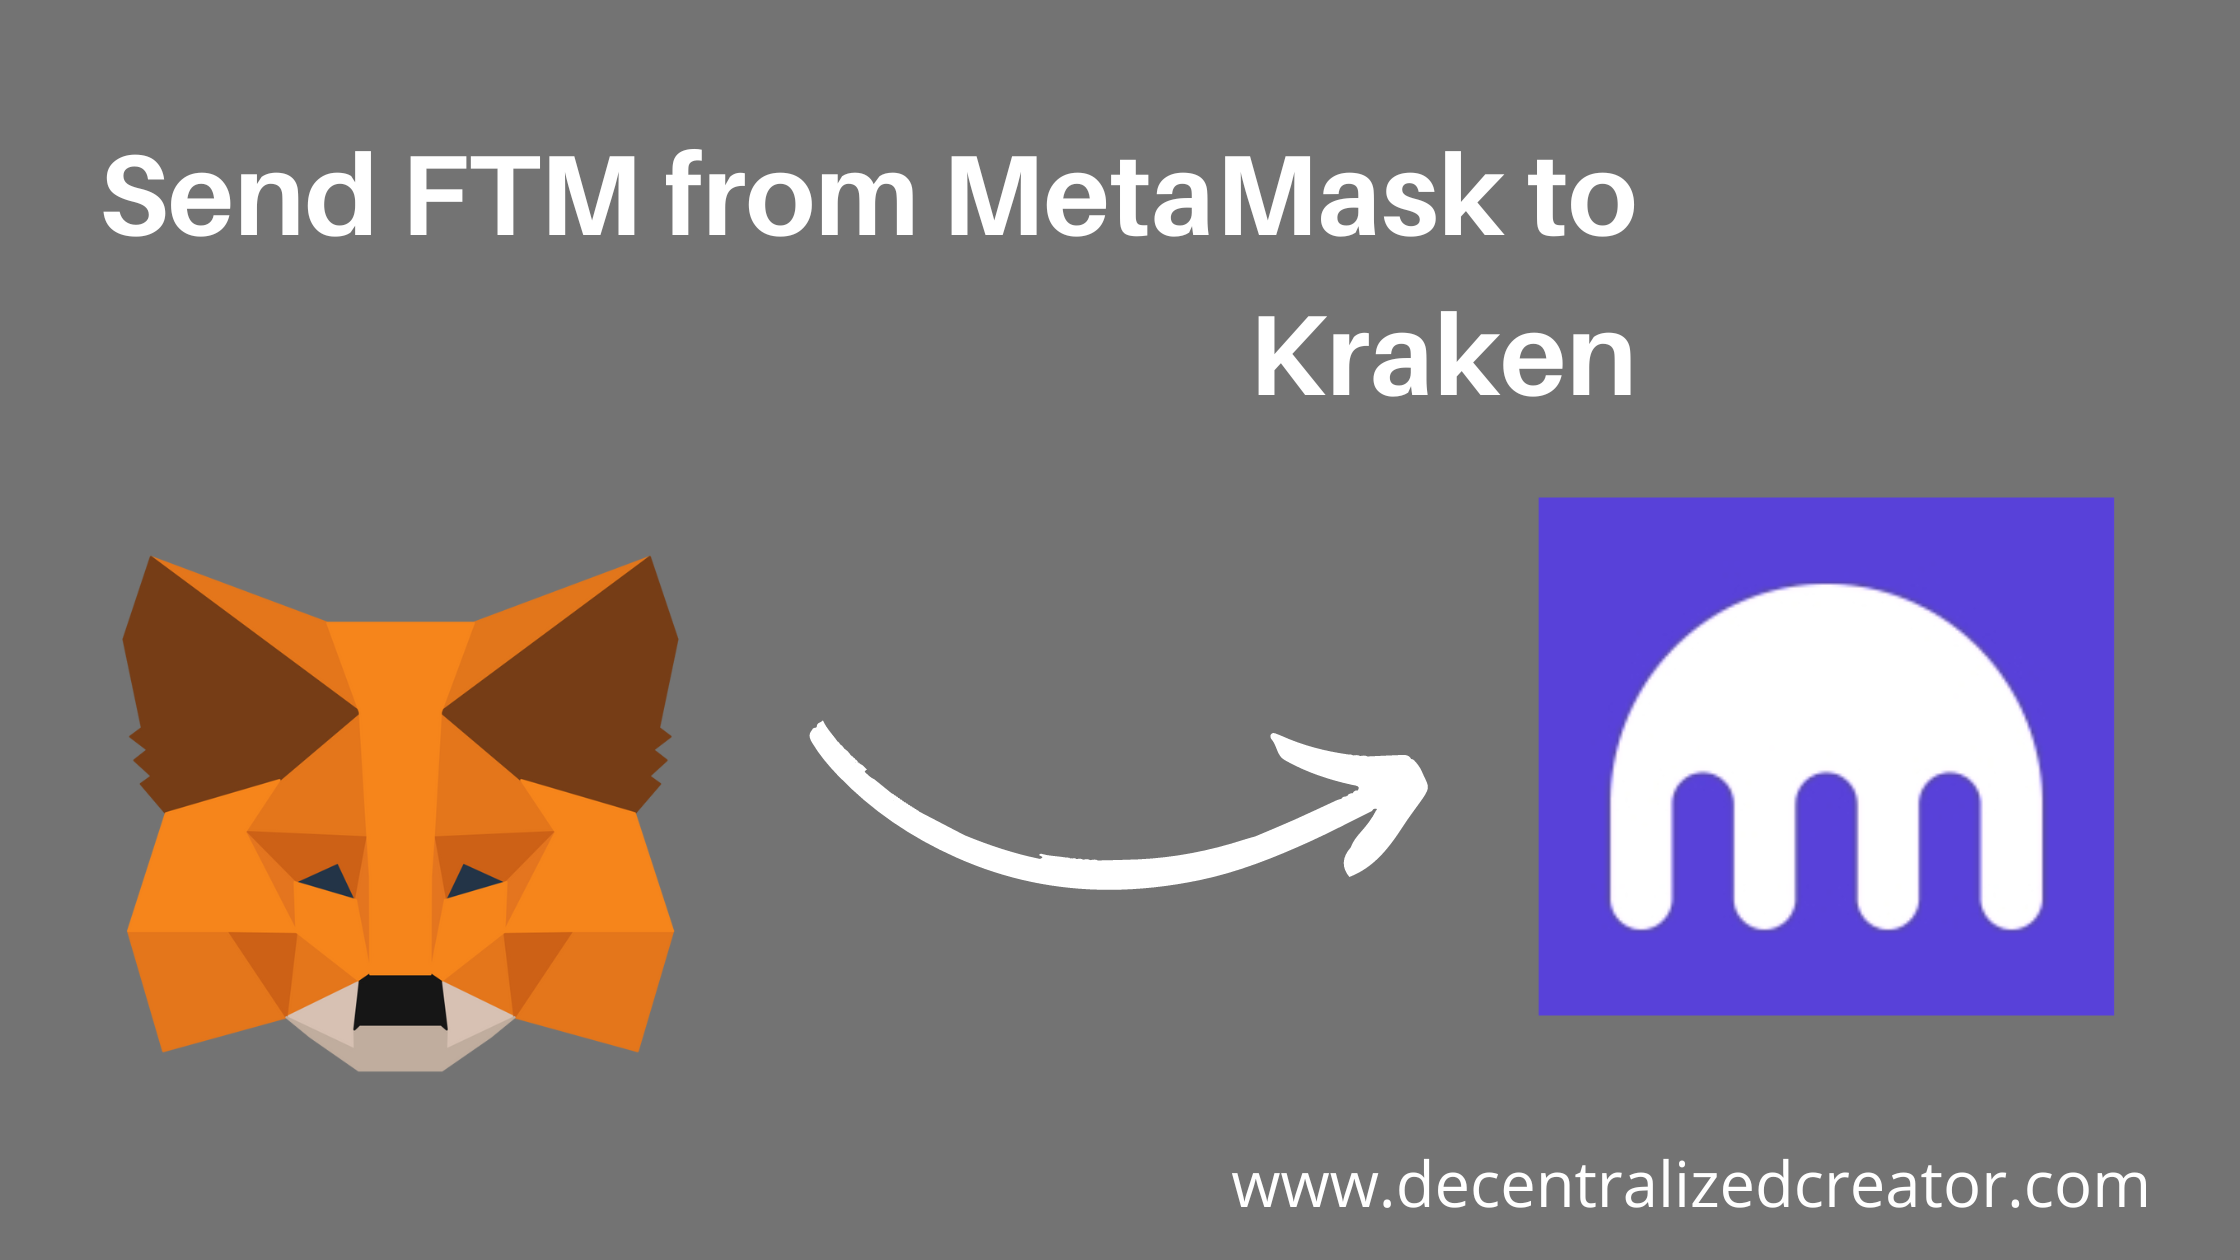 Send FTM from MetaMask to Kraken